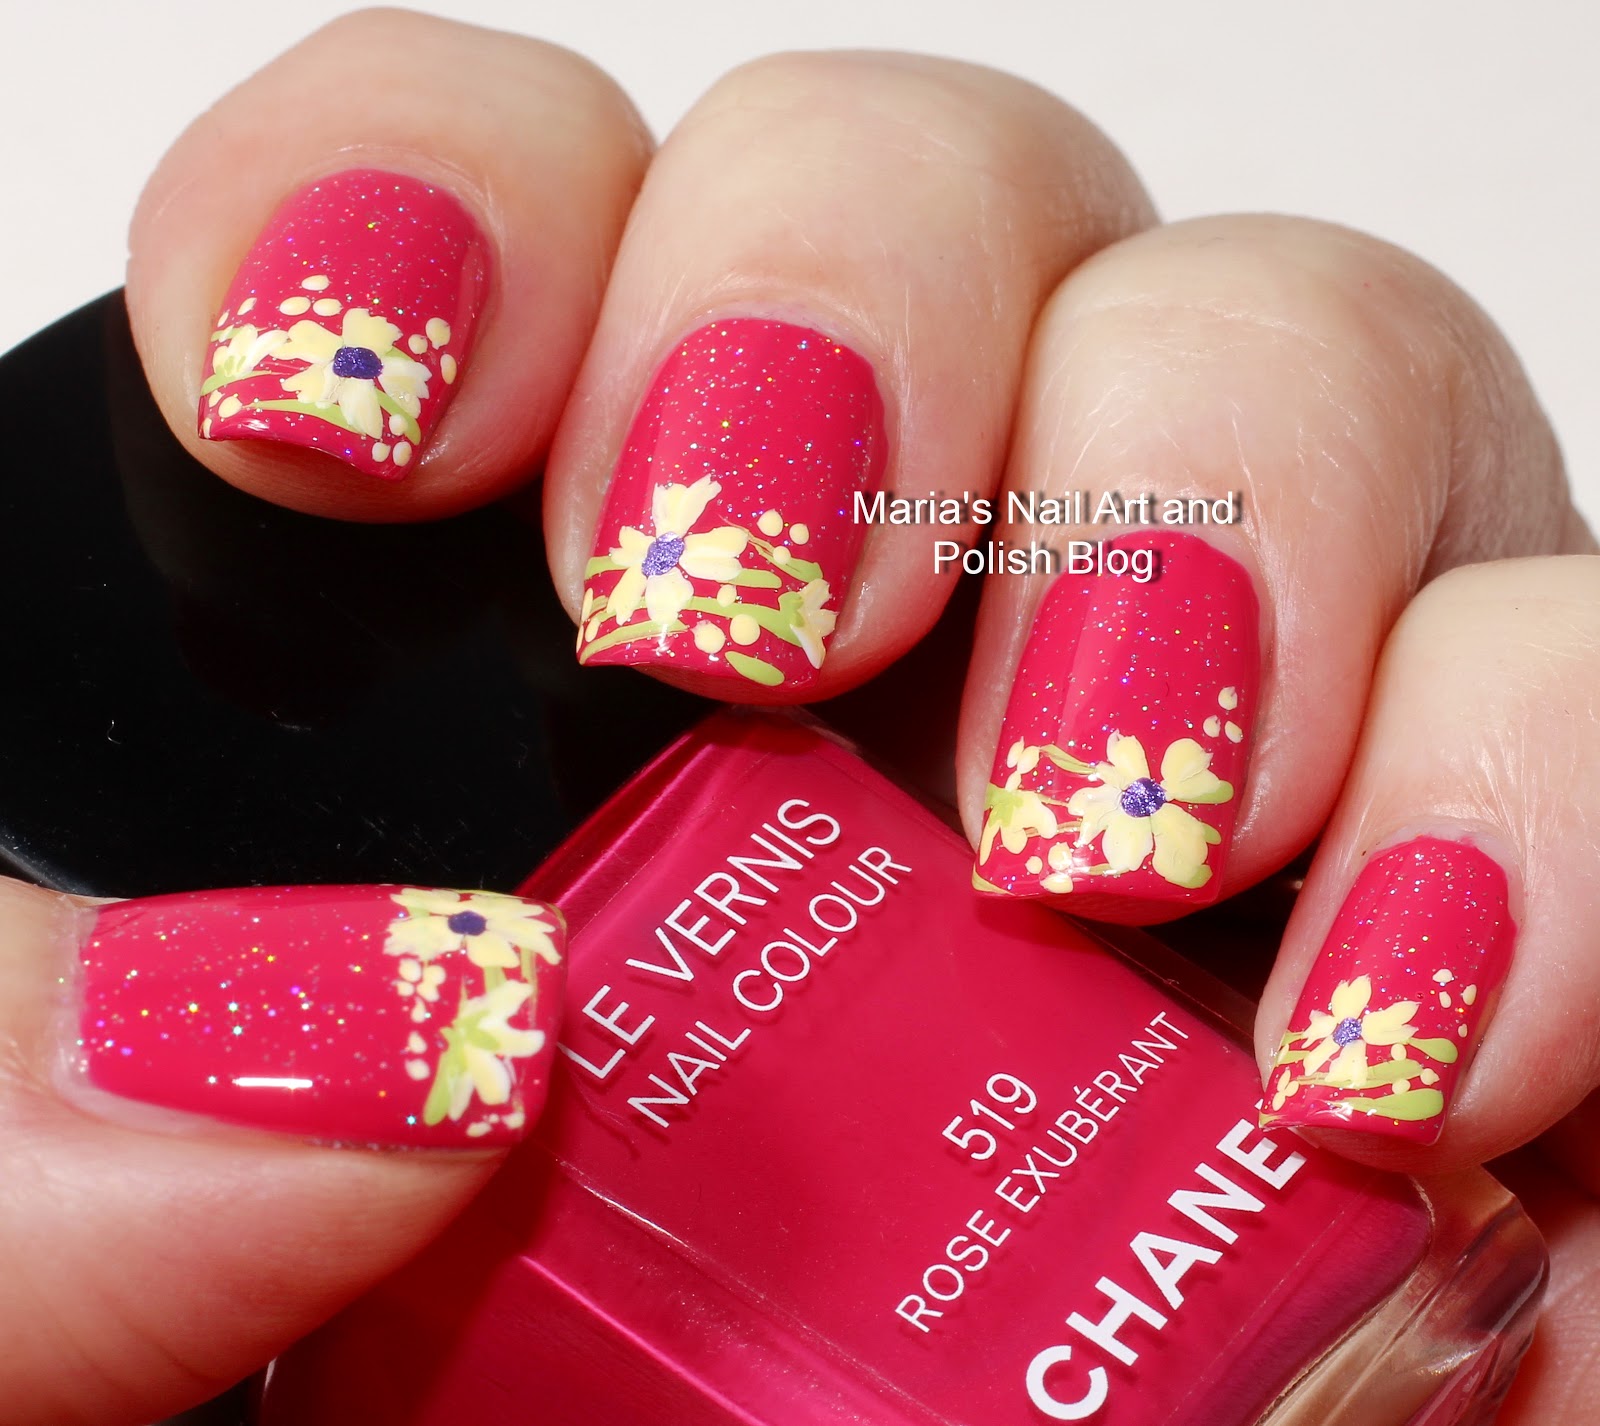 Marias Nail Art and Polish Blog: Exuberant floral French nail art